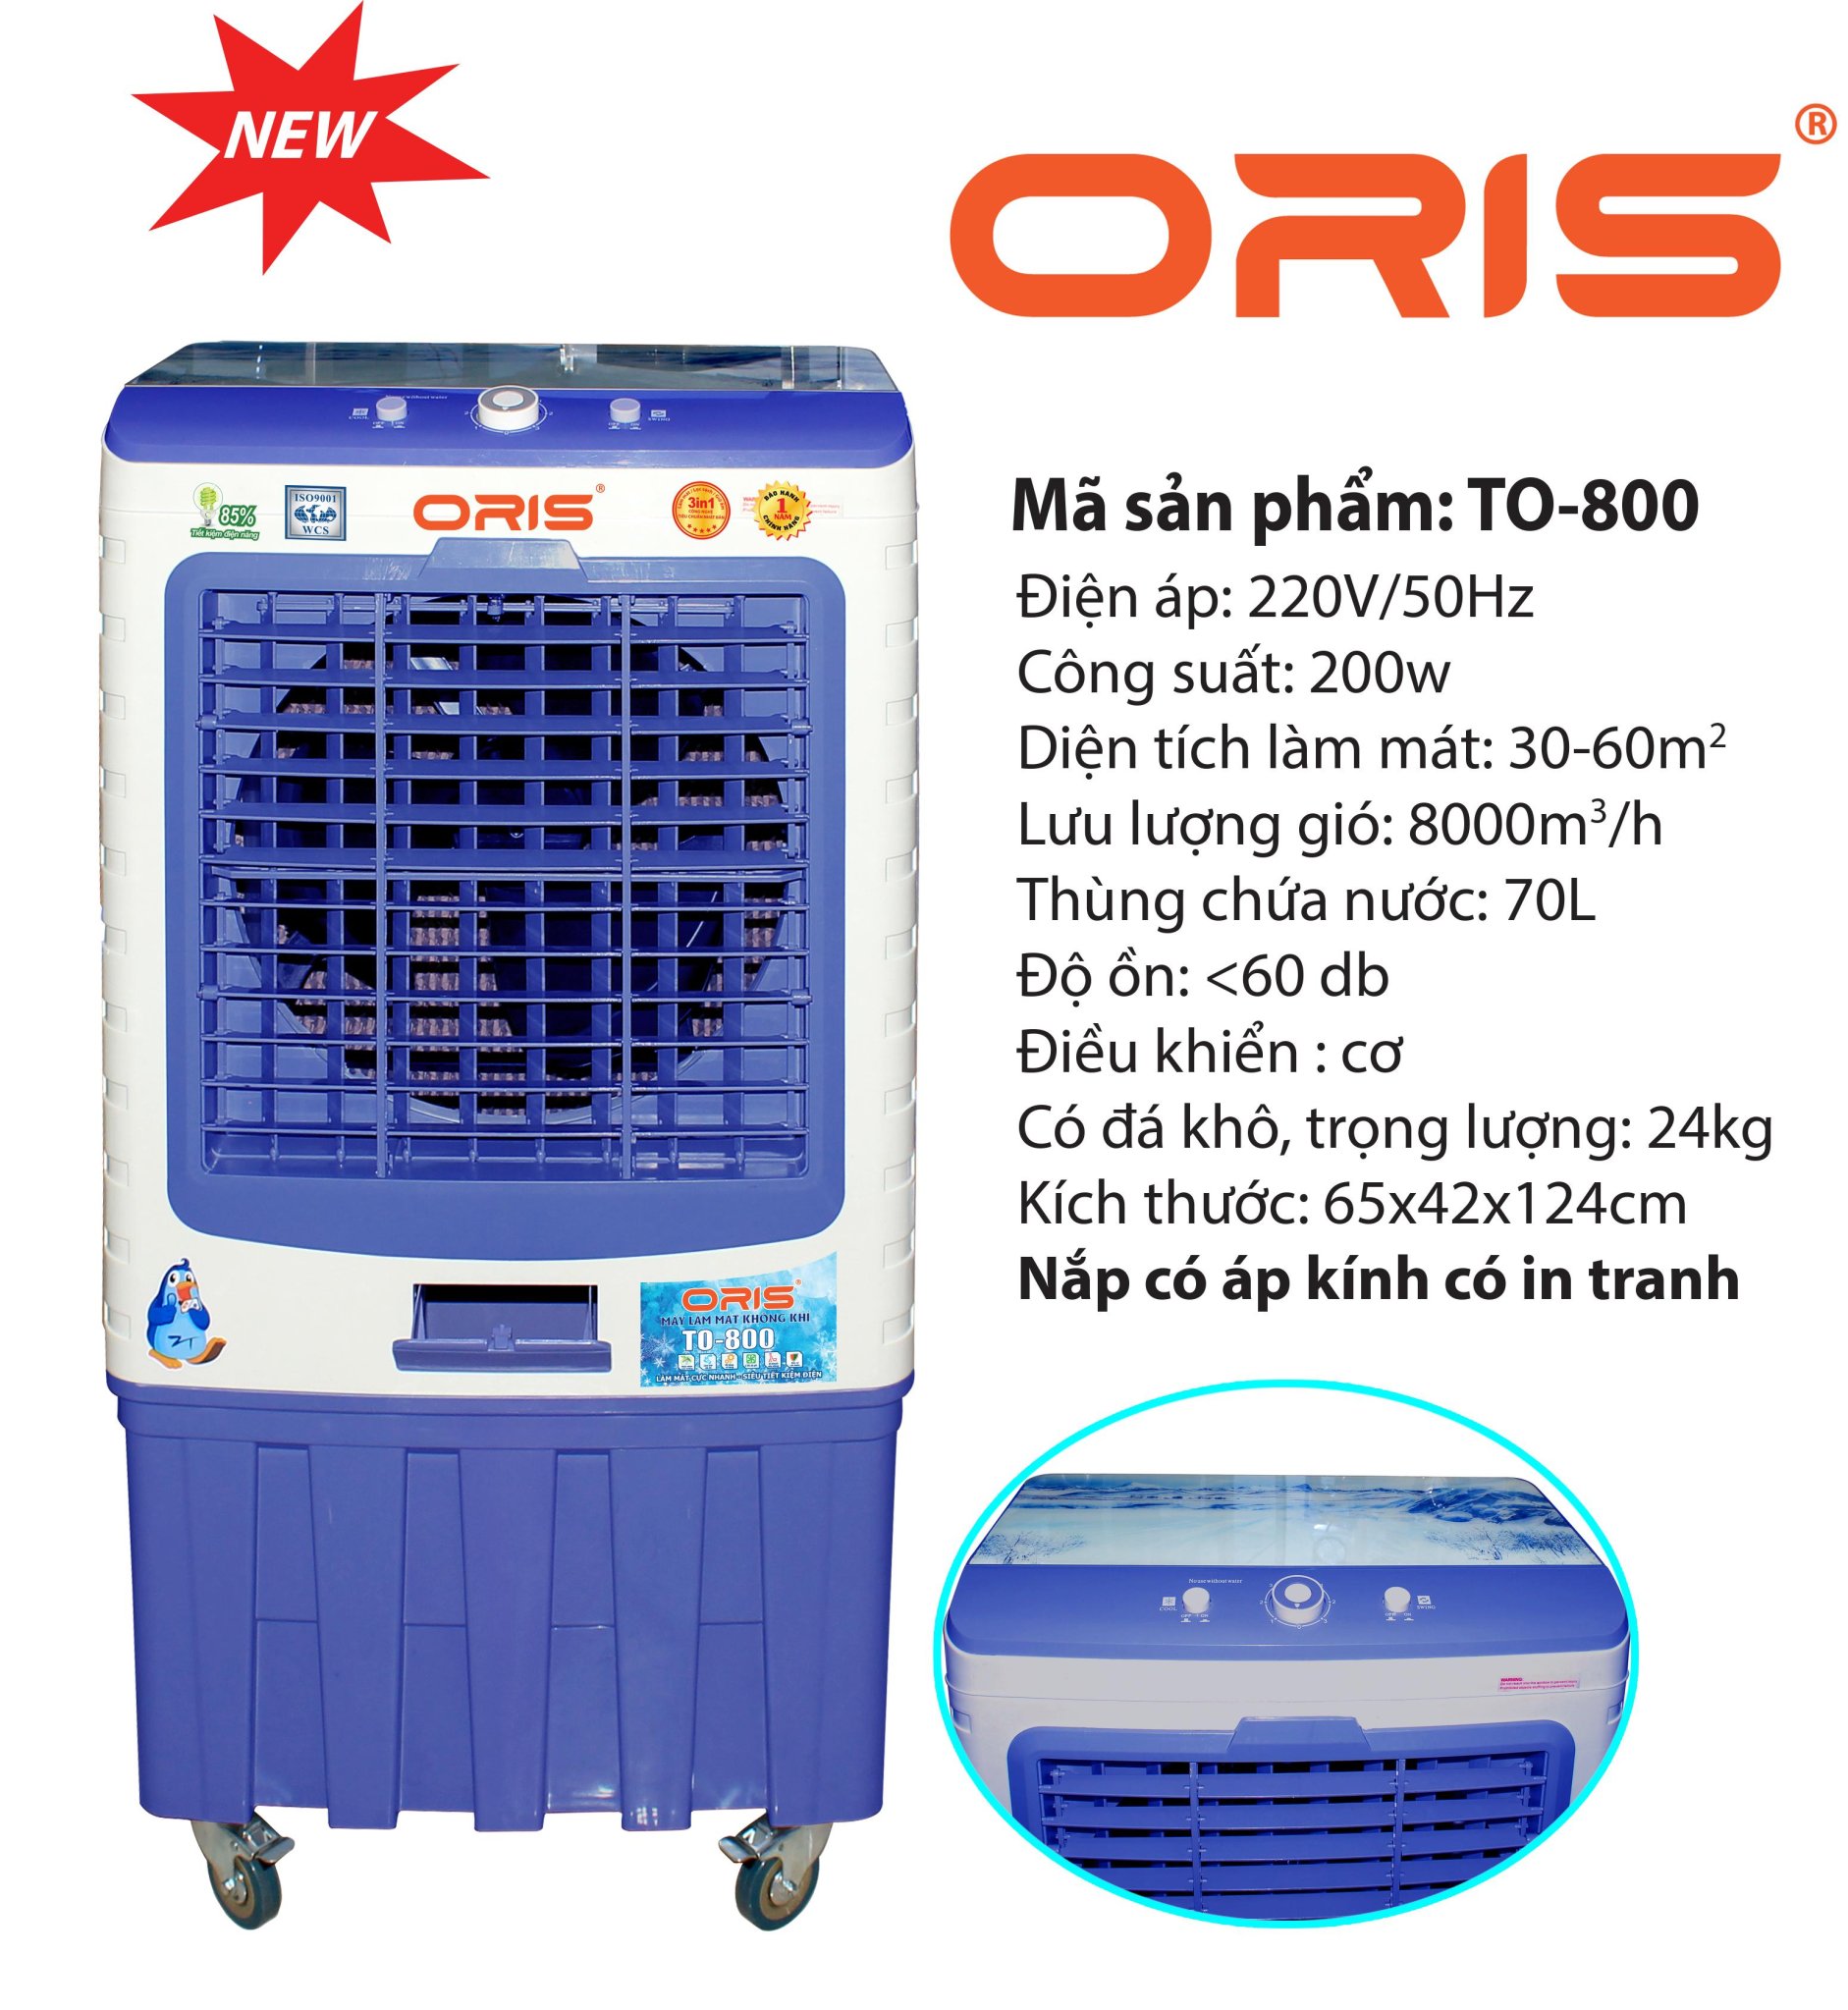 Máy làm mát không khí ORIS TO-800